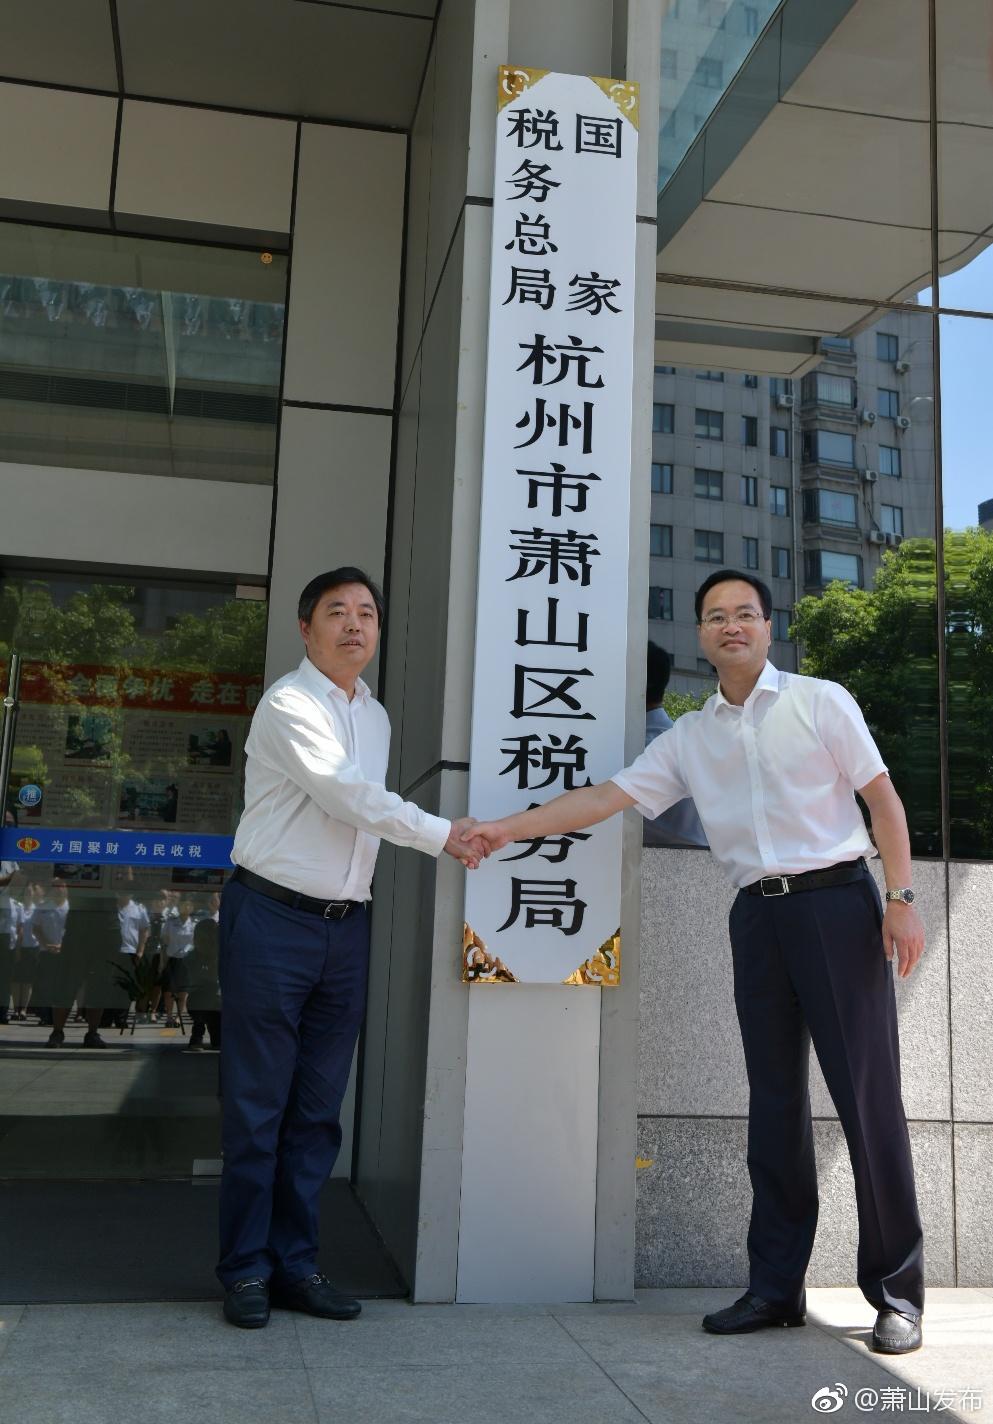 国家税务总局杭州市萧山区税务局挂牌成立